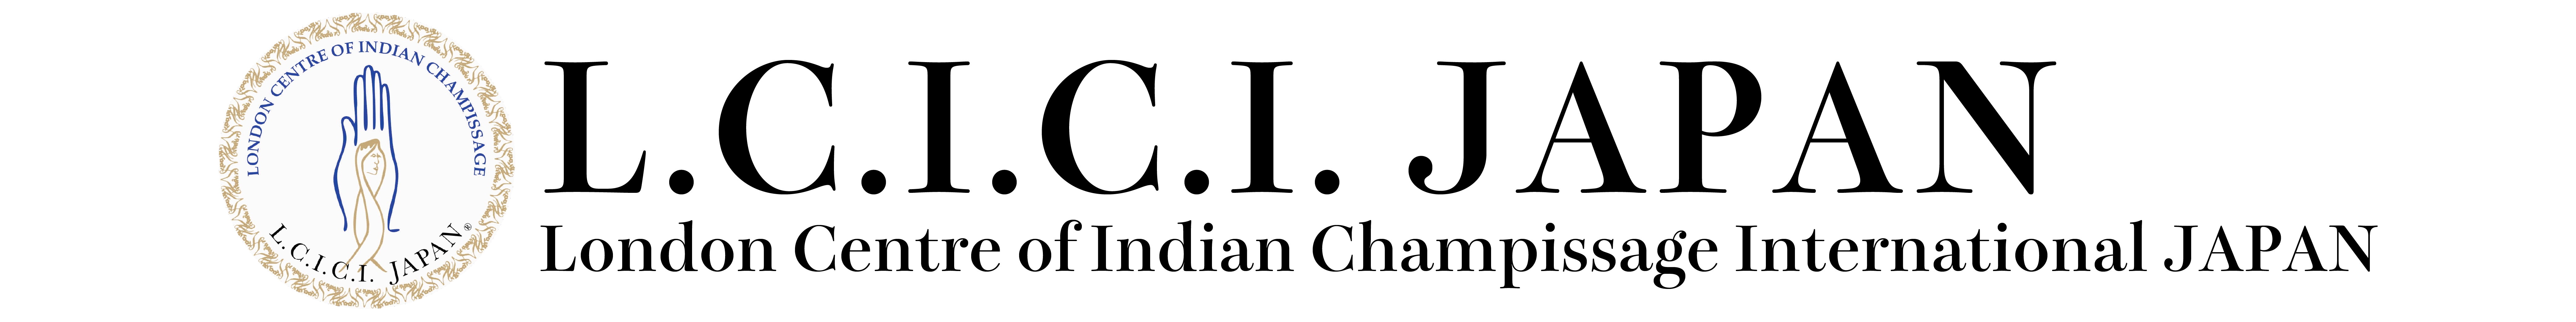 公式lcicijapan/チャンピサージ  インド式ヘッドマッサージ  ヘッドスパの世界的パイオニア 